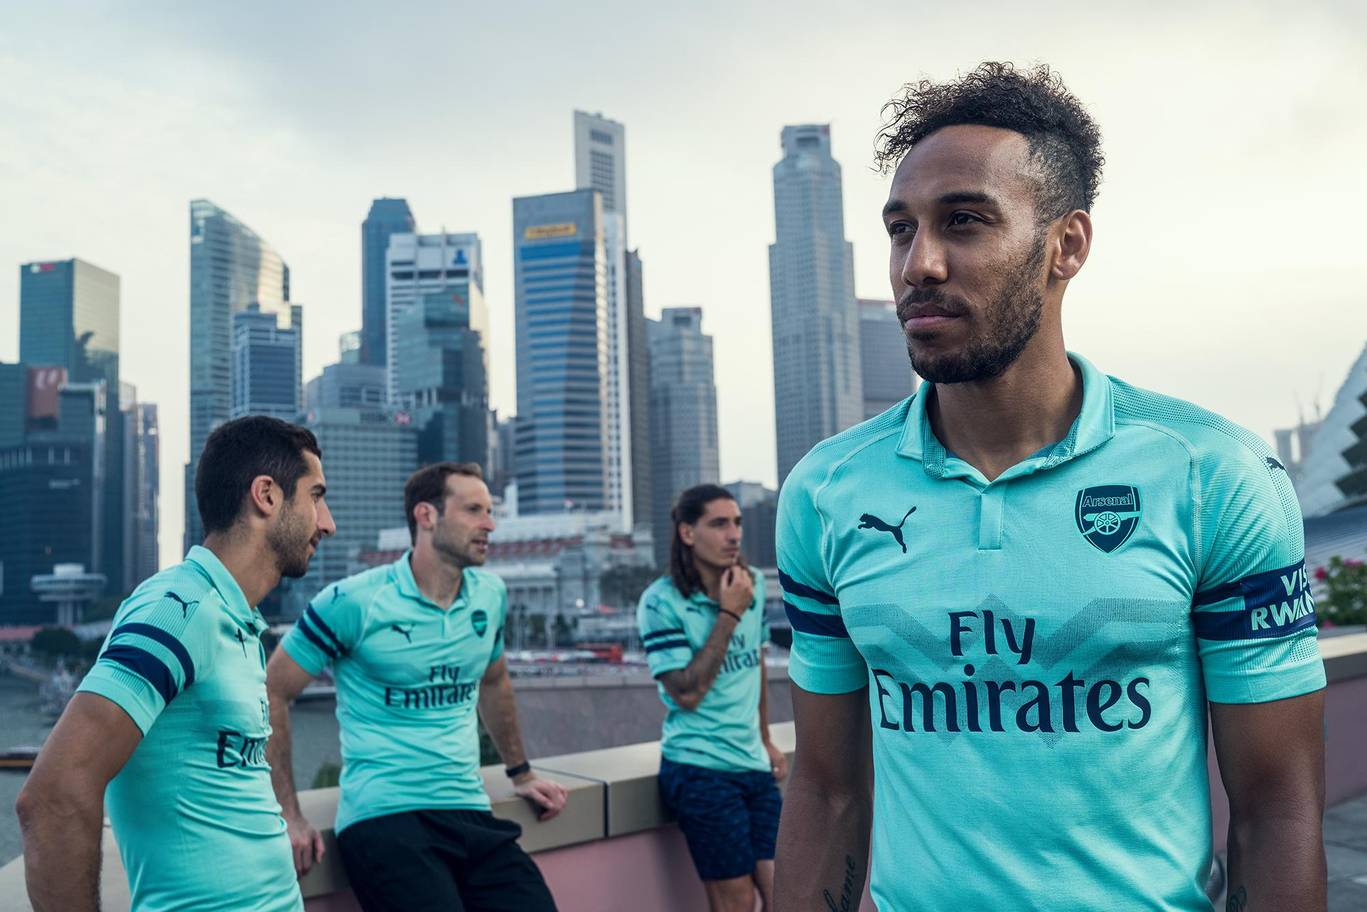 Arsenal unveil third kit for the 2018-19 season